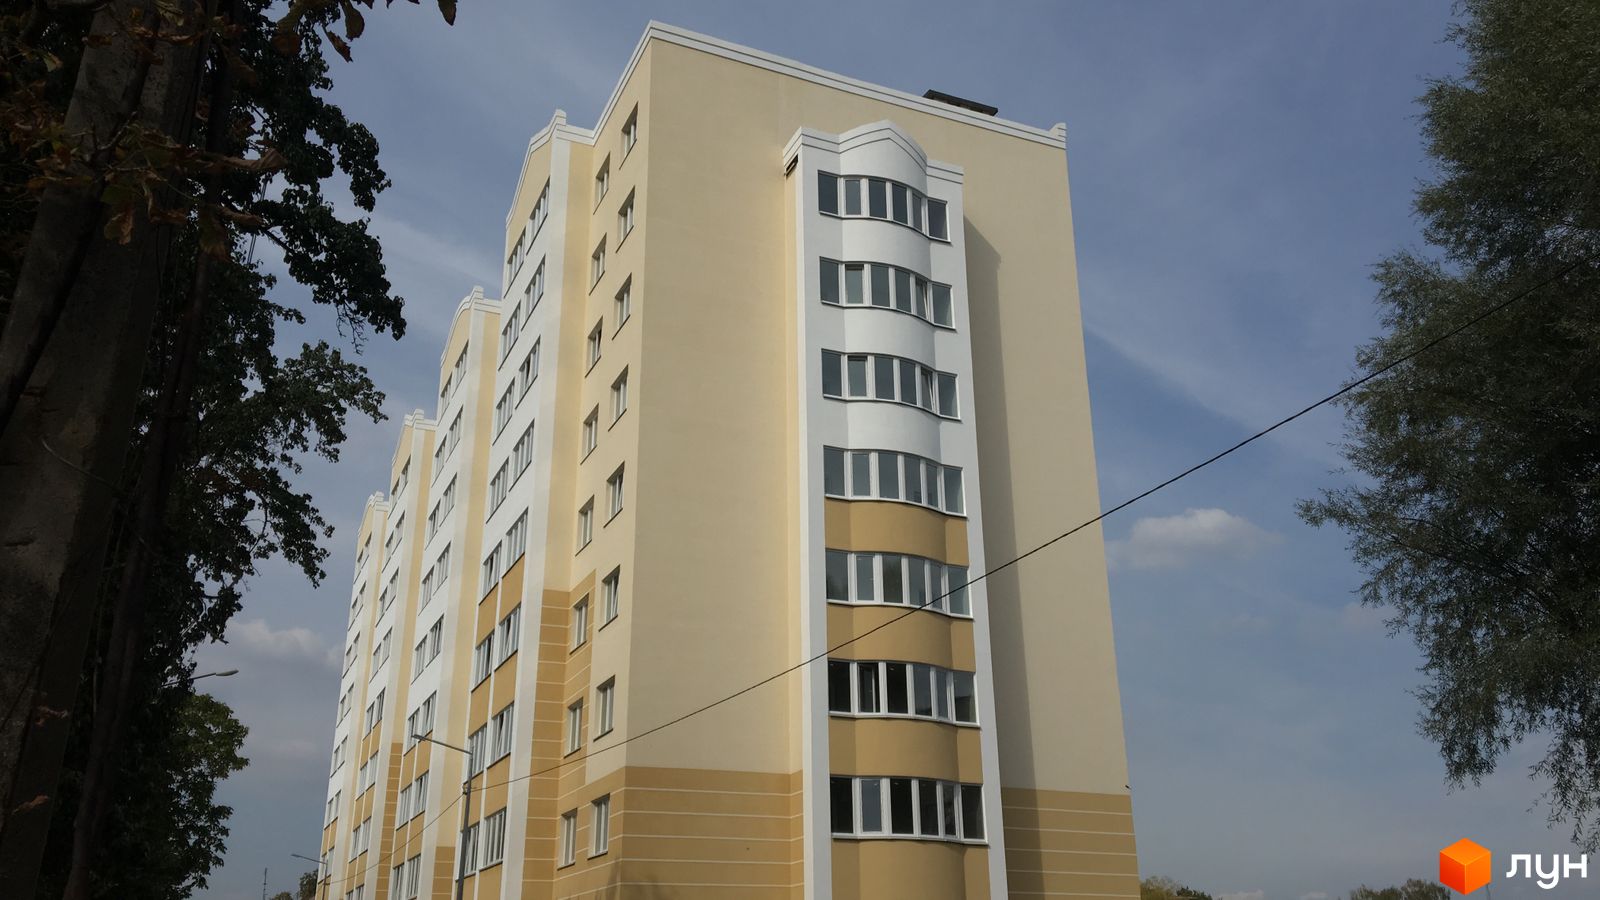 Моніторинг будівництва ЖК Новосілки - Ракурс 1, сентябрь 2018